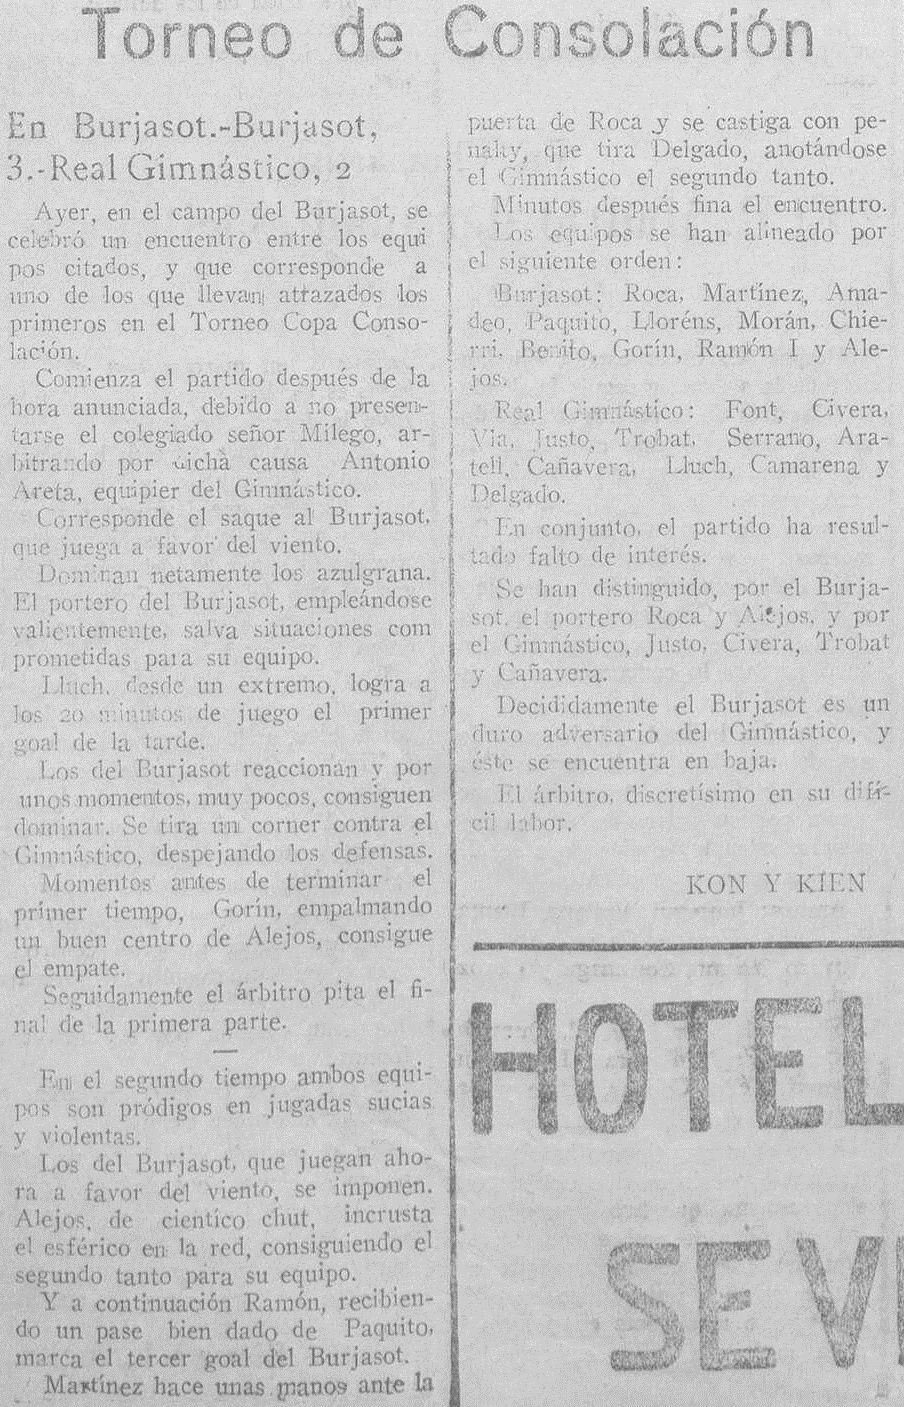 1928.05.06 (6 мая 1928), Буржасот - Гимнастико, 3-2.jpg